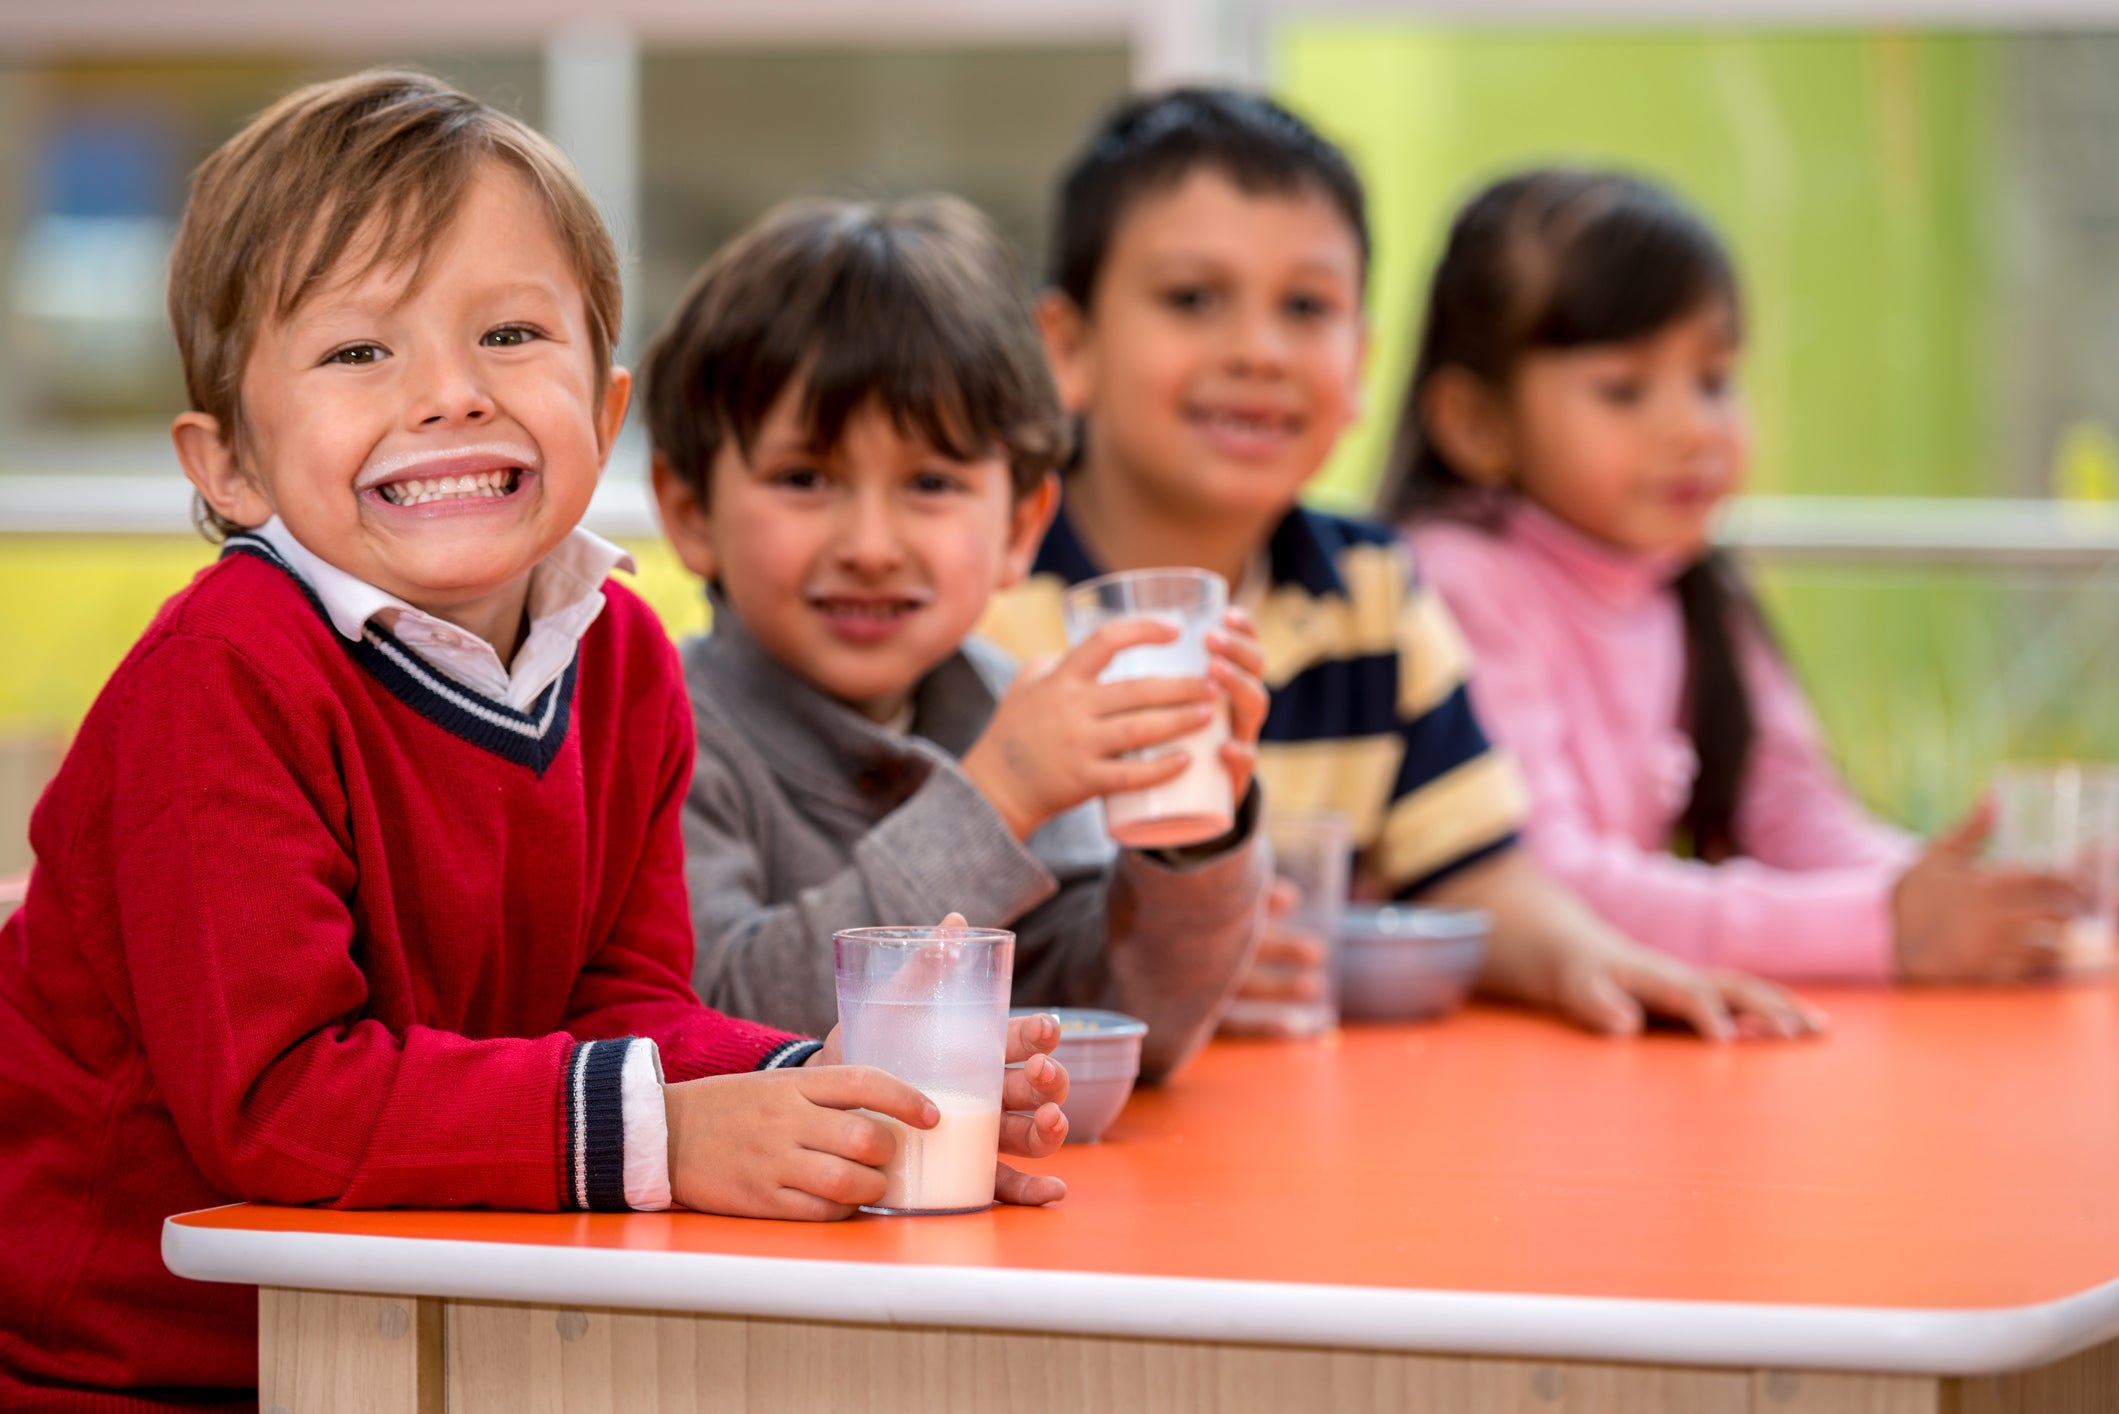 Subsidised milk for children aged 5-11 through the European School Milk Scheme is under threat